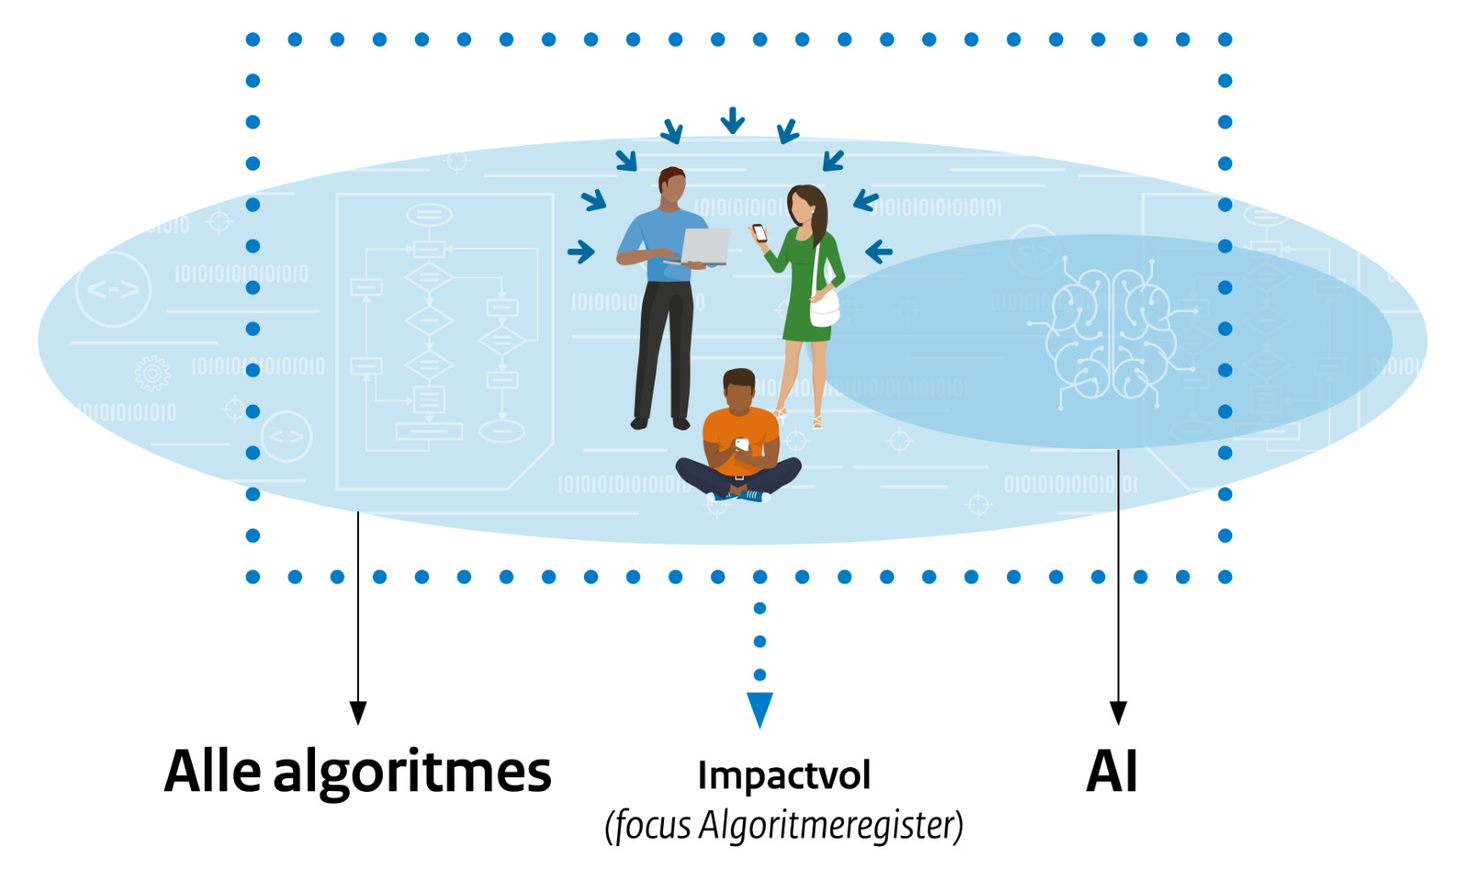 De verzameling 'alle algoritmes' bevat zowel deelverzameling 'Impactvolle algoritmes' (met invloed op mensen) als de deelverzameling 'AI'.